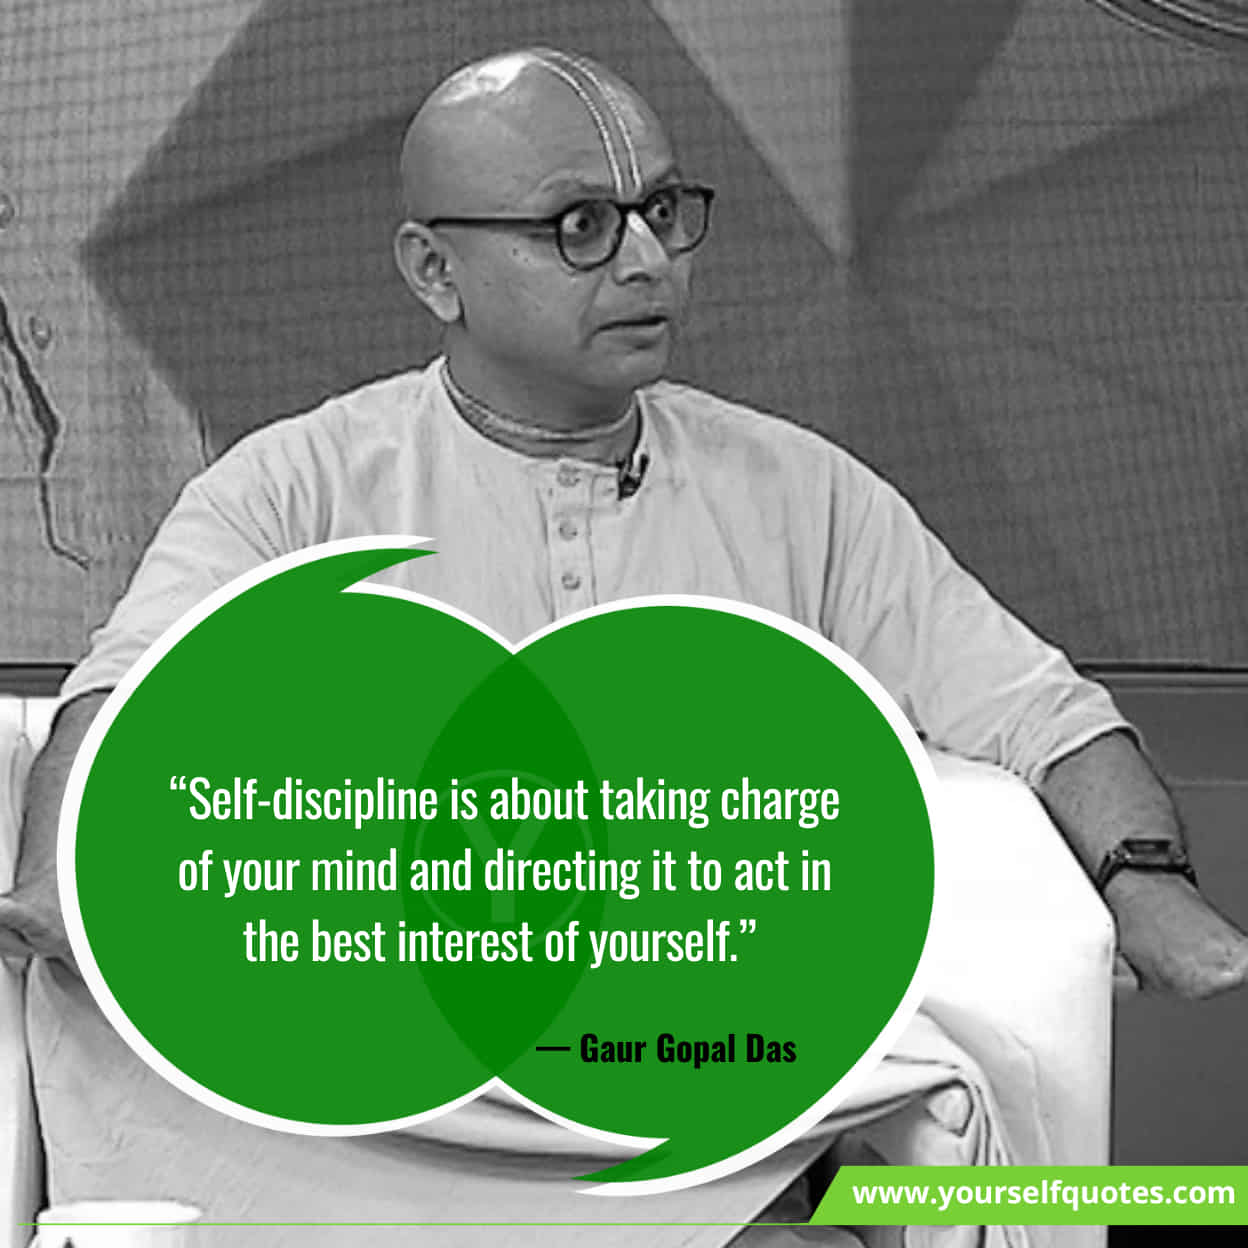 Gaur Gopal Das Quotes On Self-Discipline